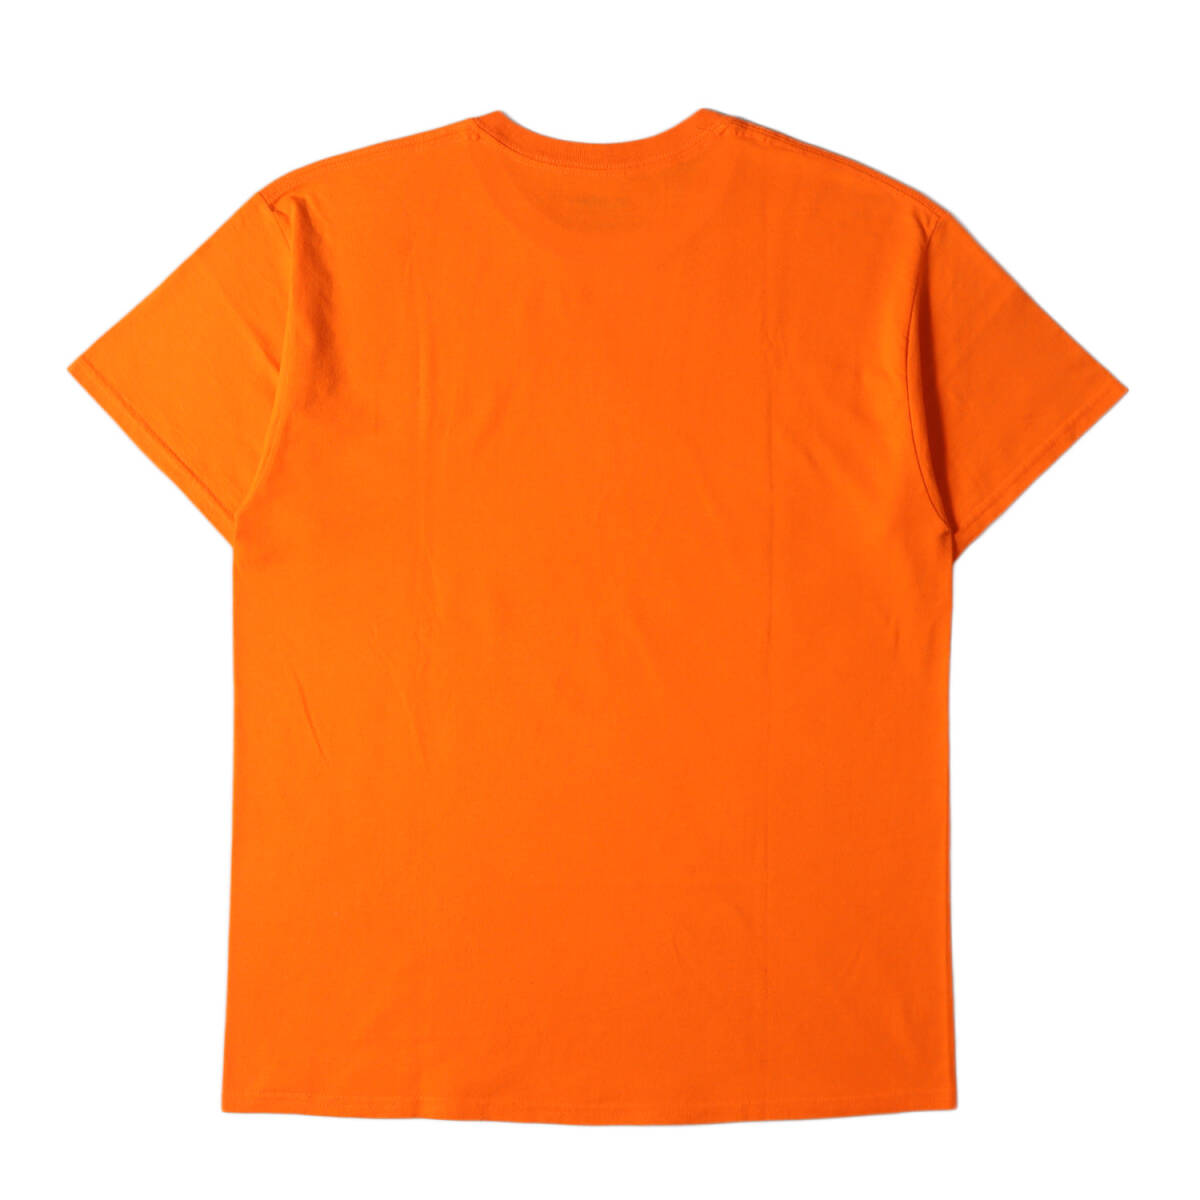 X-LARGE エクストララージ Tシャツ サイズ:L スペース柄 ゴリラロゴ クルーネック 半袖Tシャツ オレンジ トップス カットソー ストリート_画像2